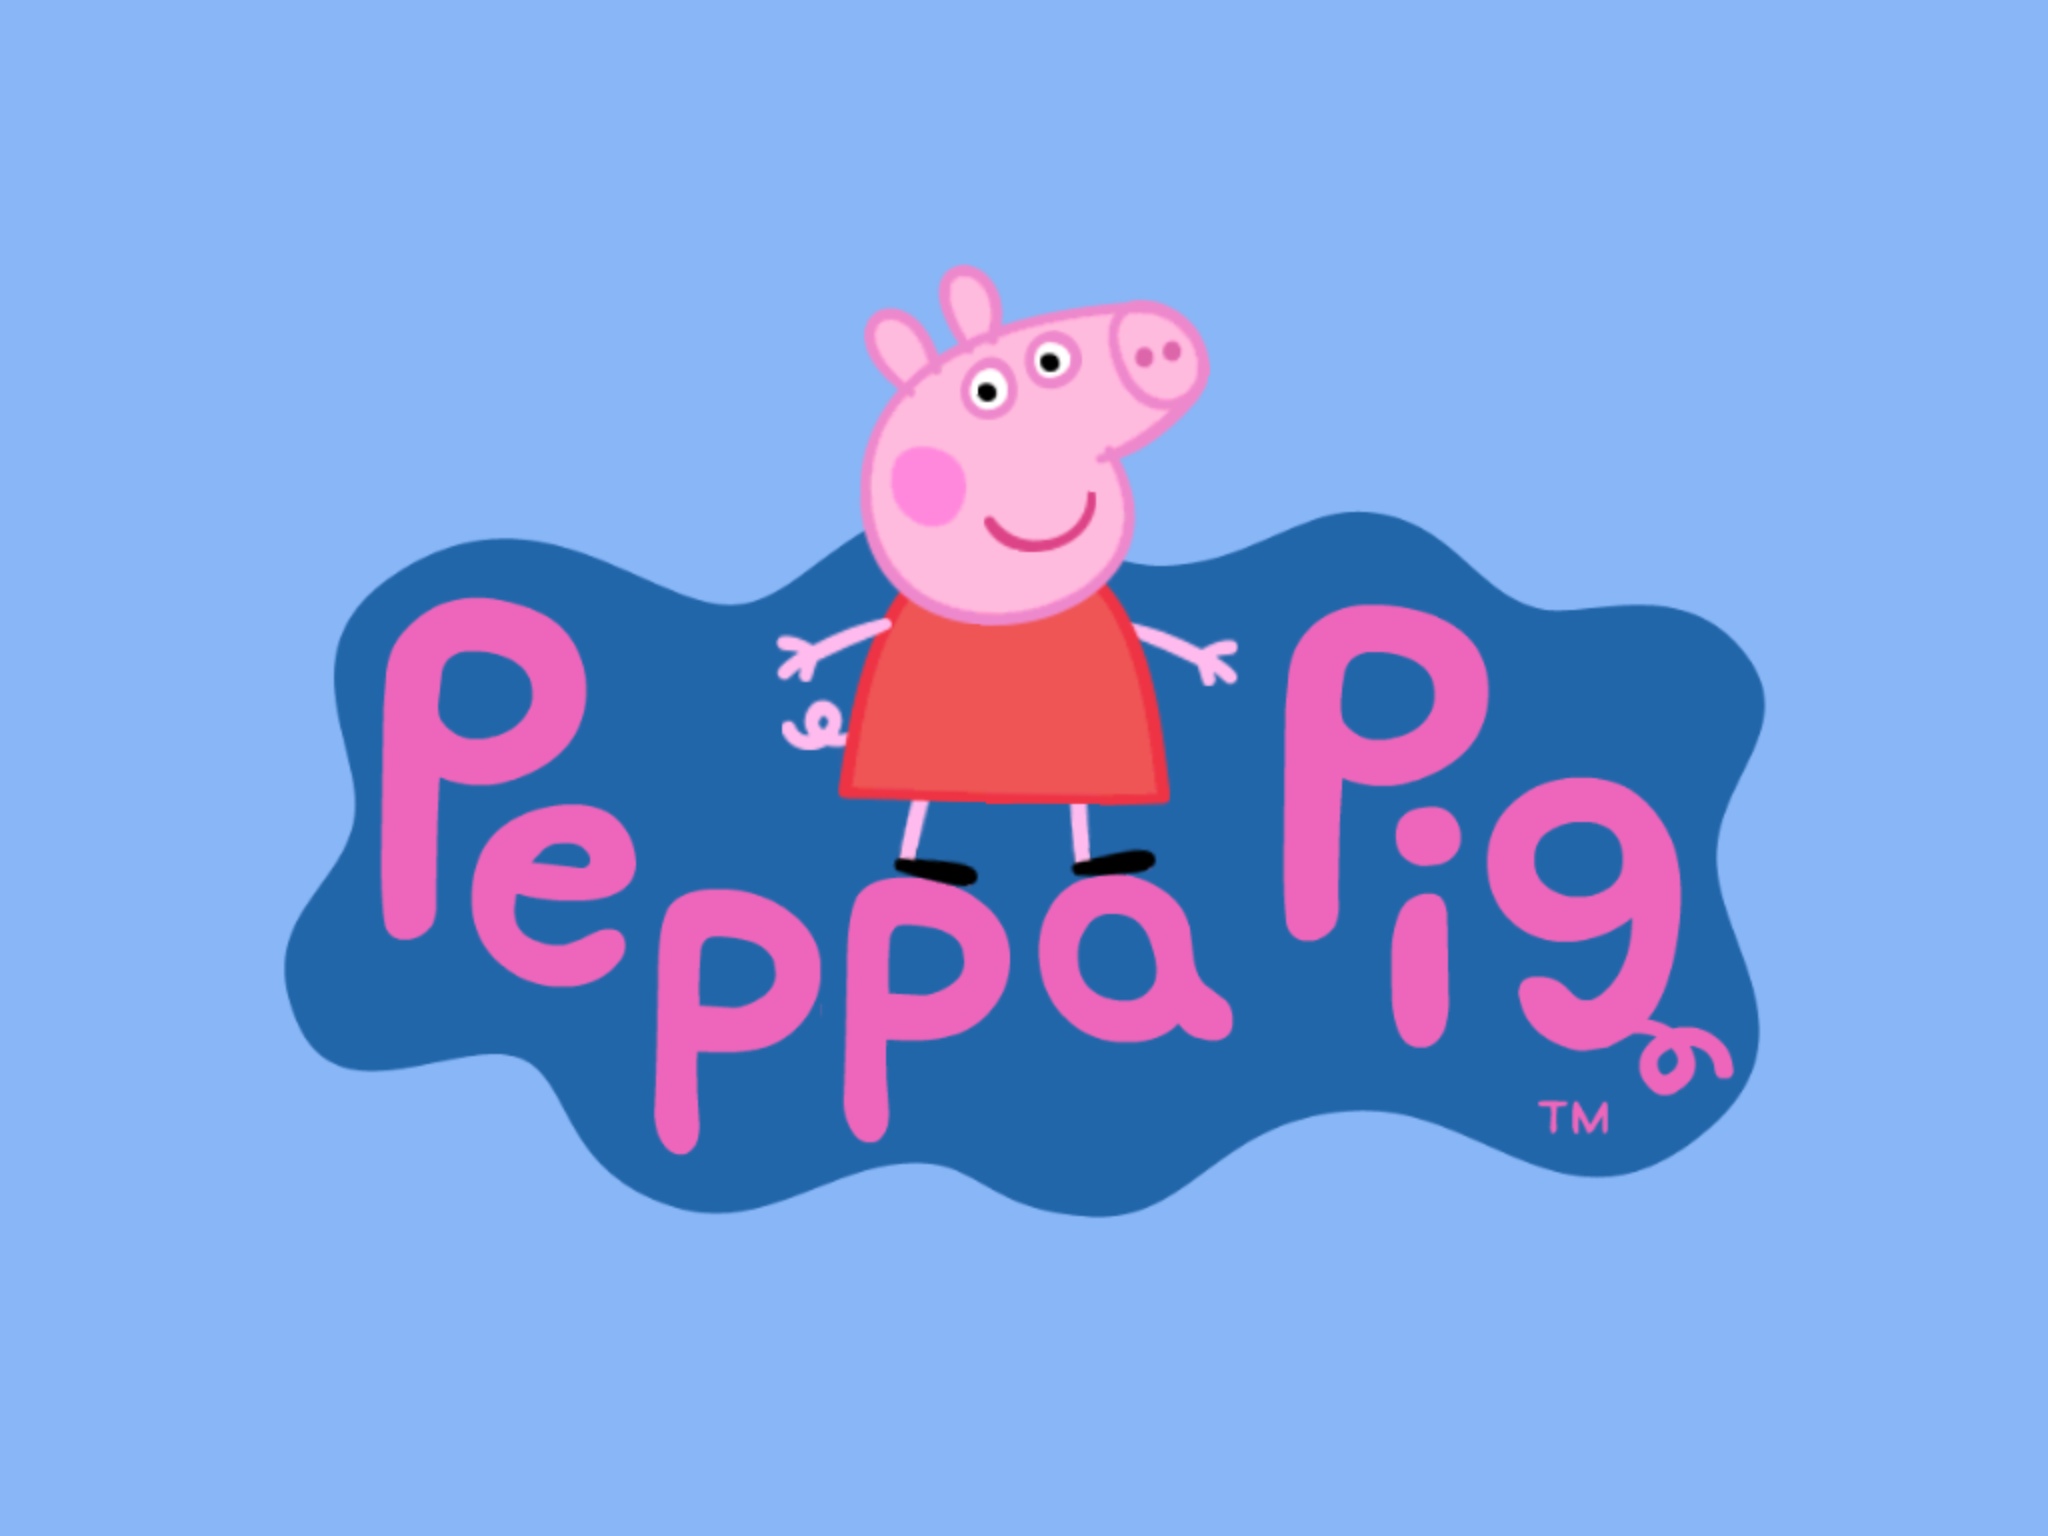 Peppa Pig Peppa Pig Wallpaper 1920x1080 HD Walls Find Wallpapers 2048x1536